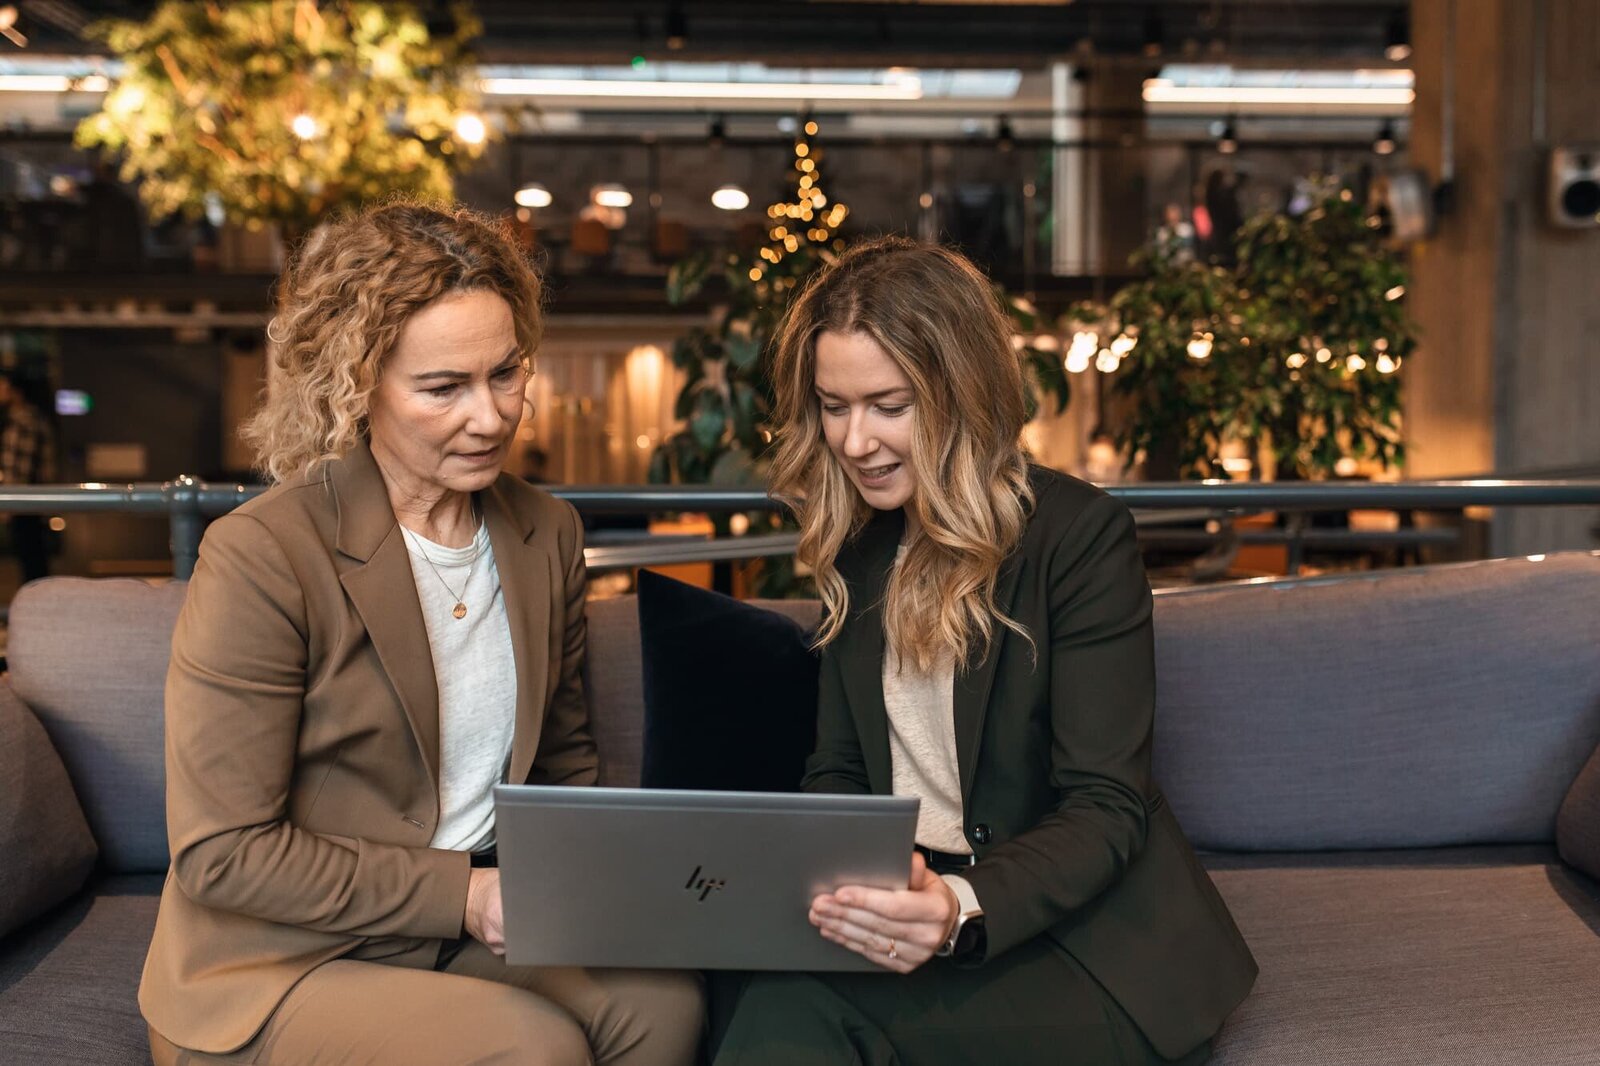 två kvinnliga företagare, med lockligt mörkblont hår, tittar på en dator.